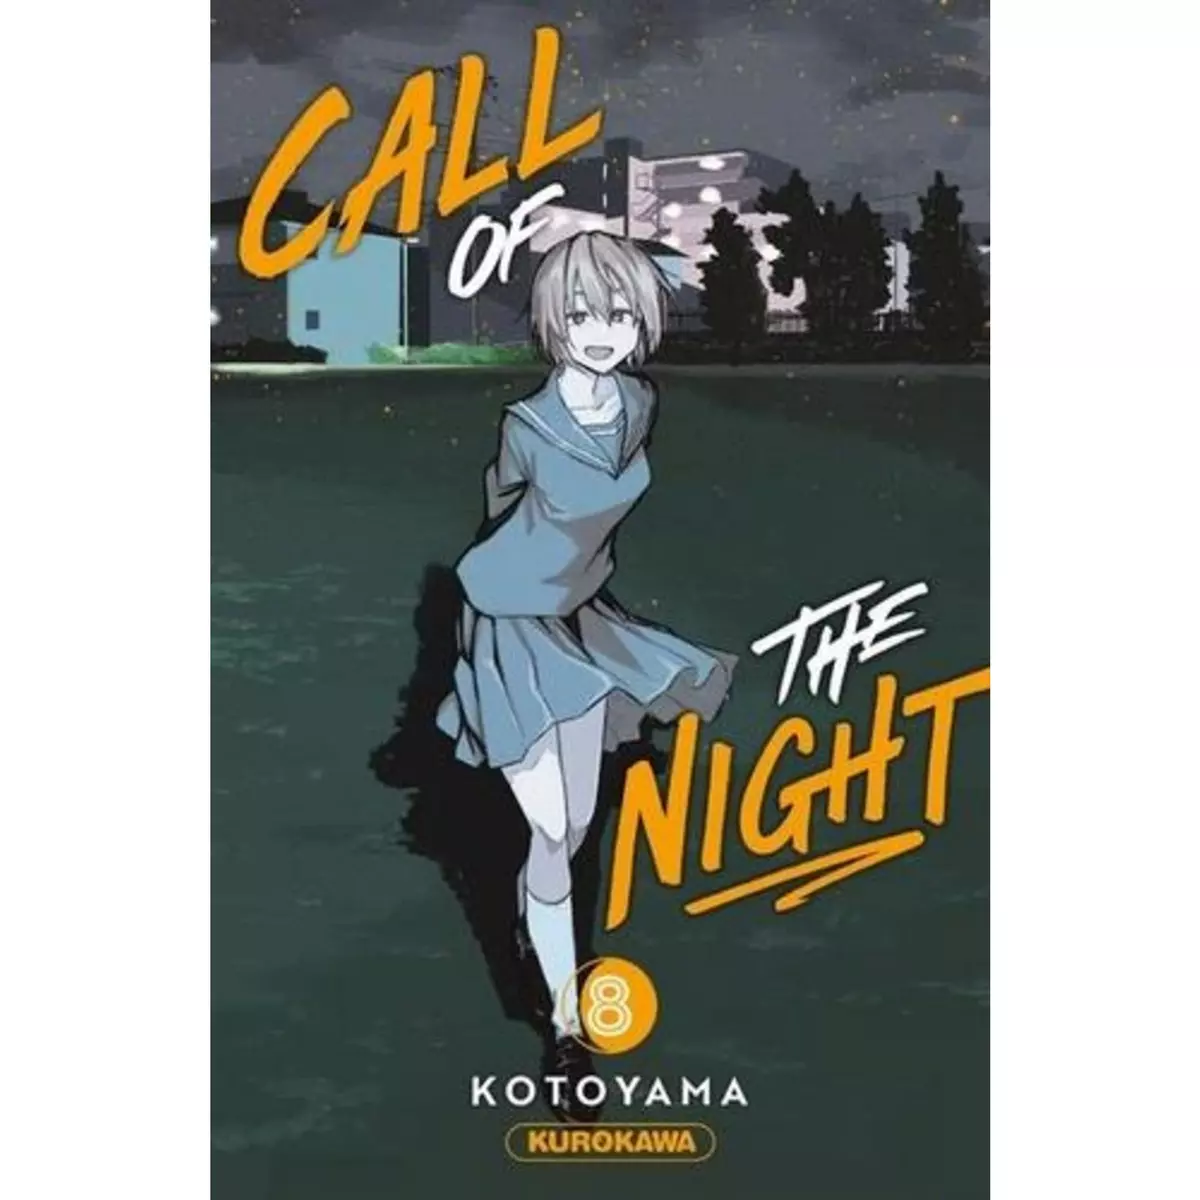  CALL OF THE NIGHT TOME 8 , Kotoyama